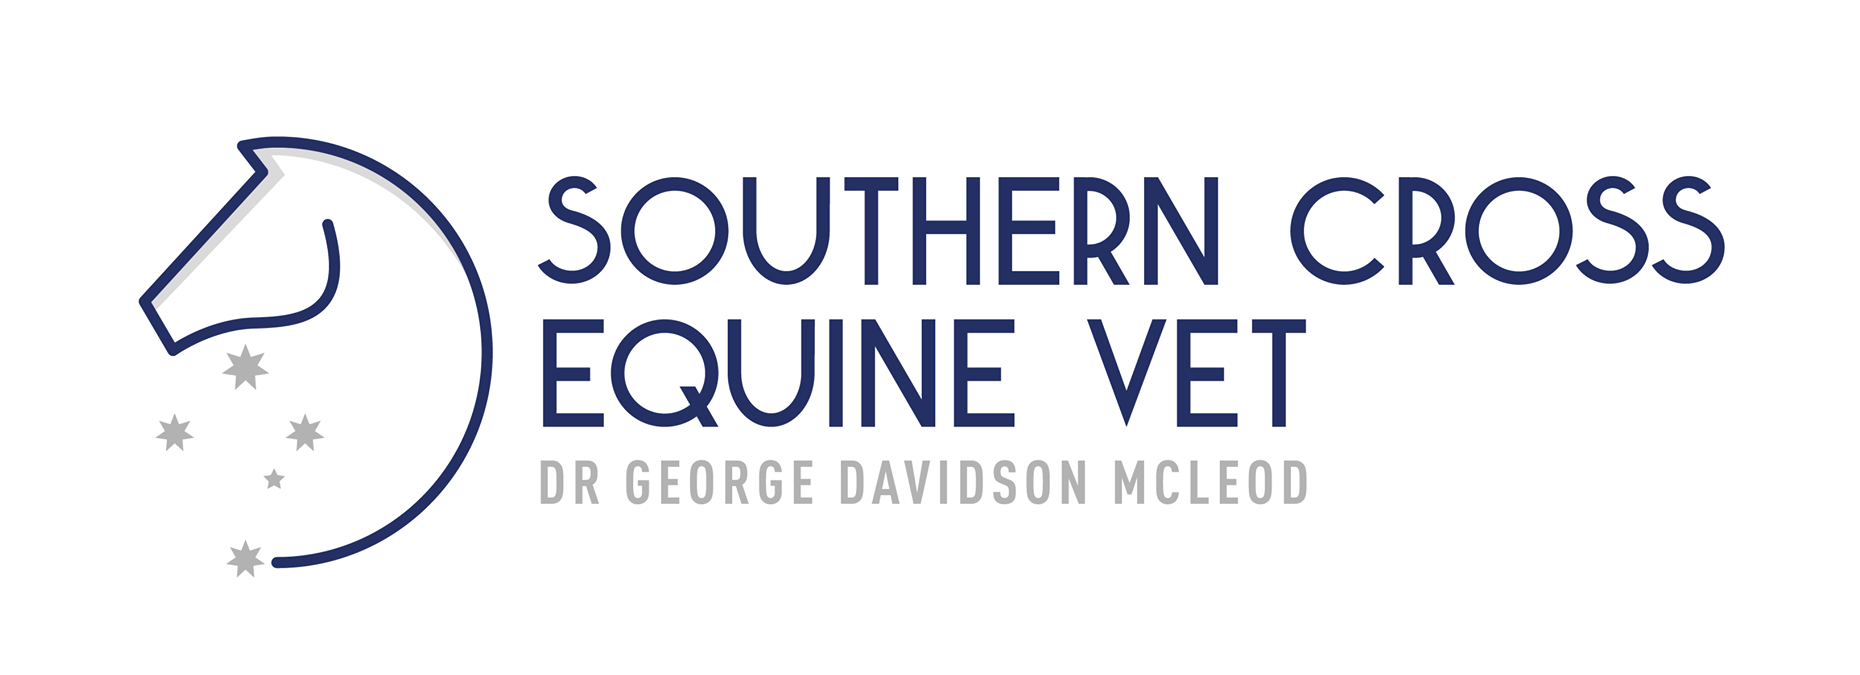 Southern Cross Equine Vet logo